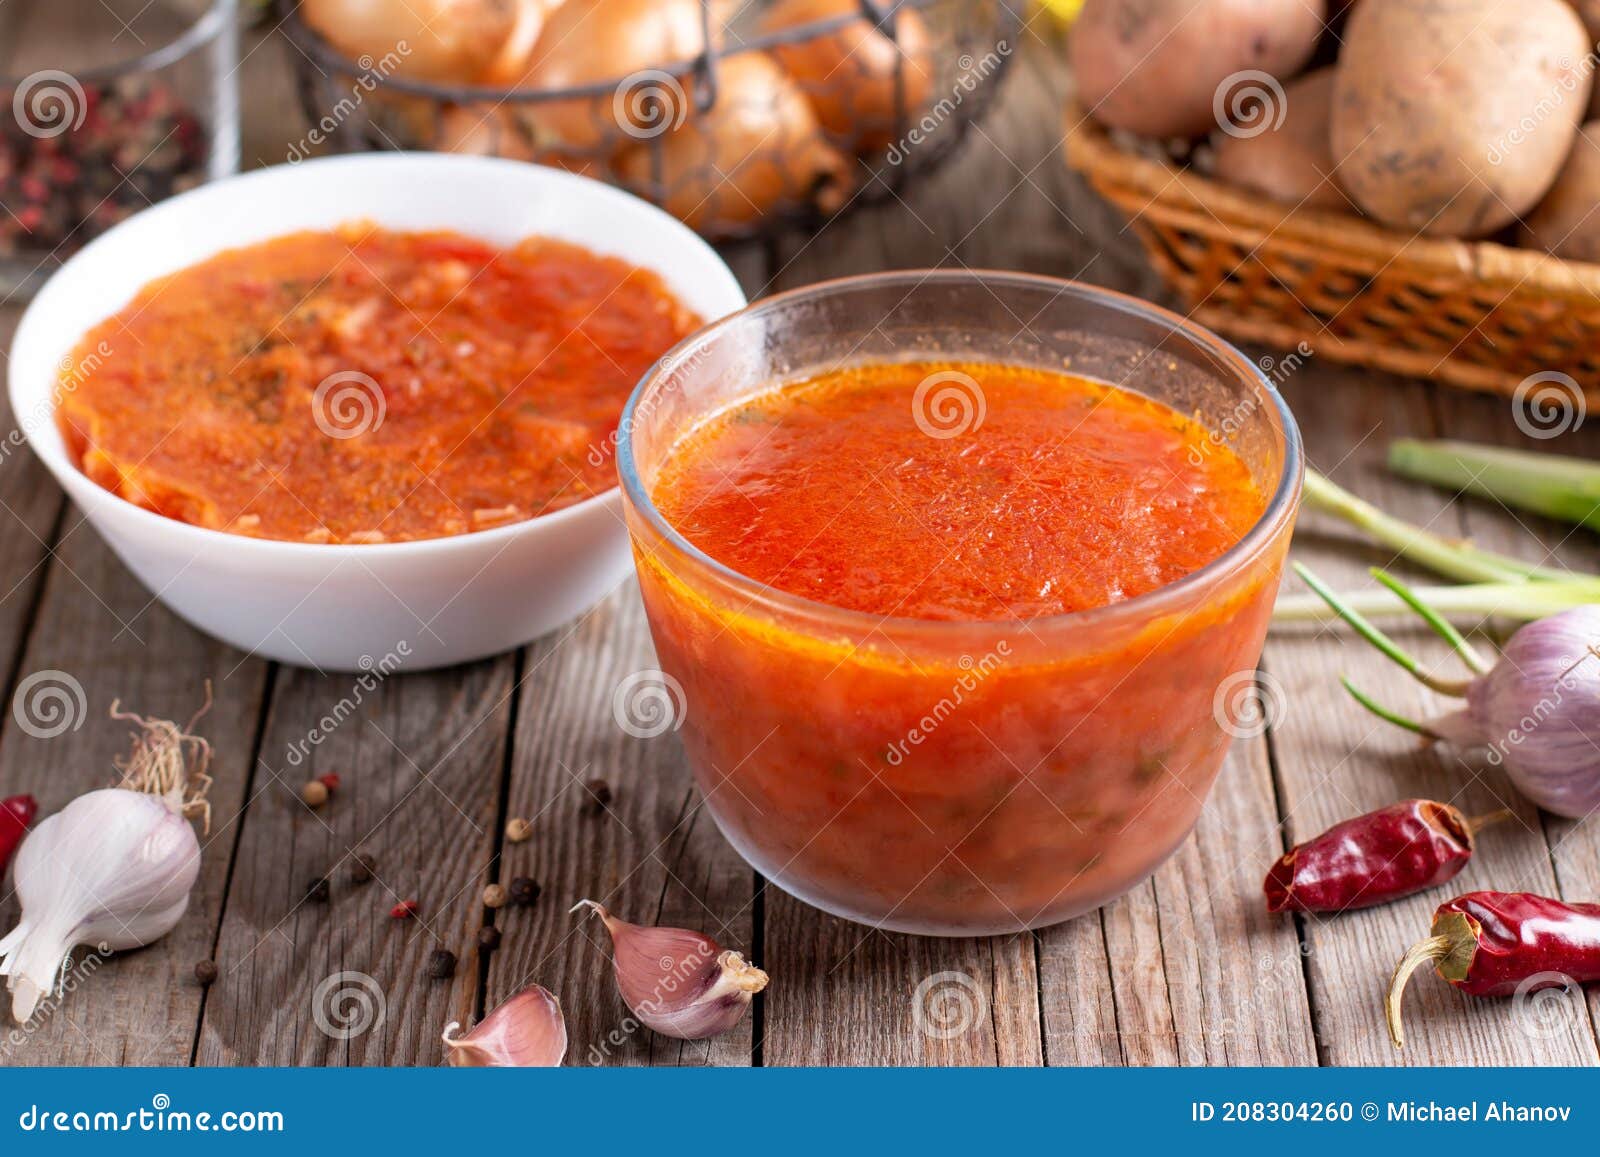 https://thumbs.dreamstime.com/z/soupe-congel%C3%A9e-borscht-dans-un-r%C3%A9cipient-en-verre-aliments-surgel%C3%A9s-sur-une-table-bois-208304260.jpg